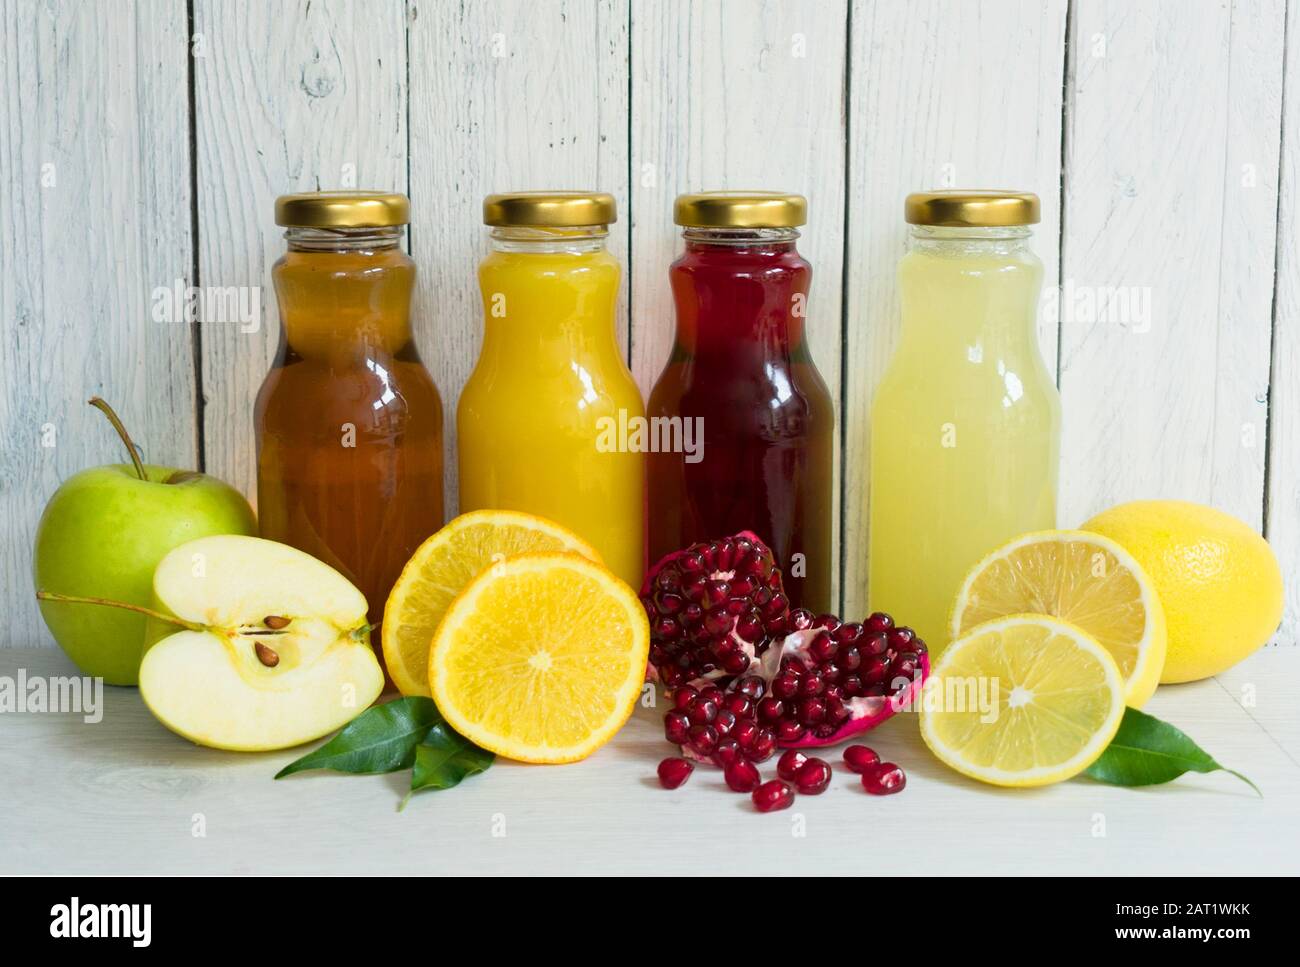 Vier Arten von Saft (Granatapfel, Apfel, Zitrone, Orangensaft) in Glasflaschen auf weißem Holz- Hintergrund. Stockfoto